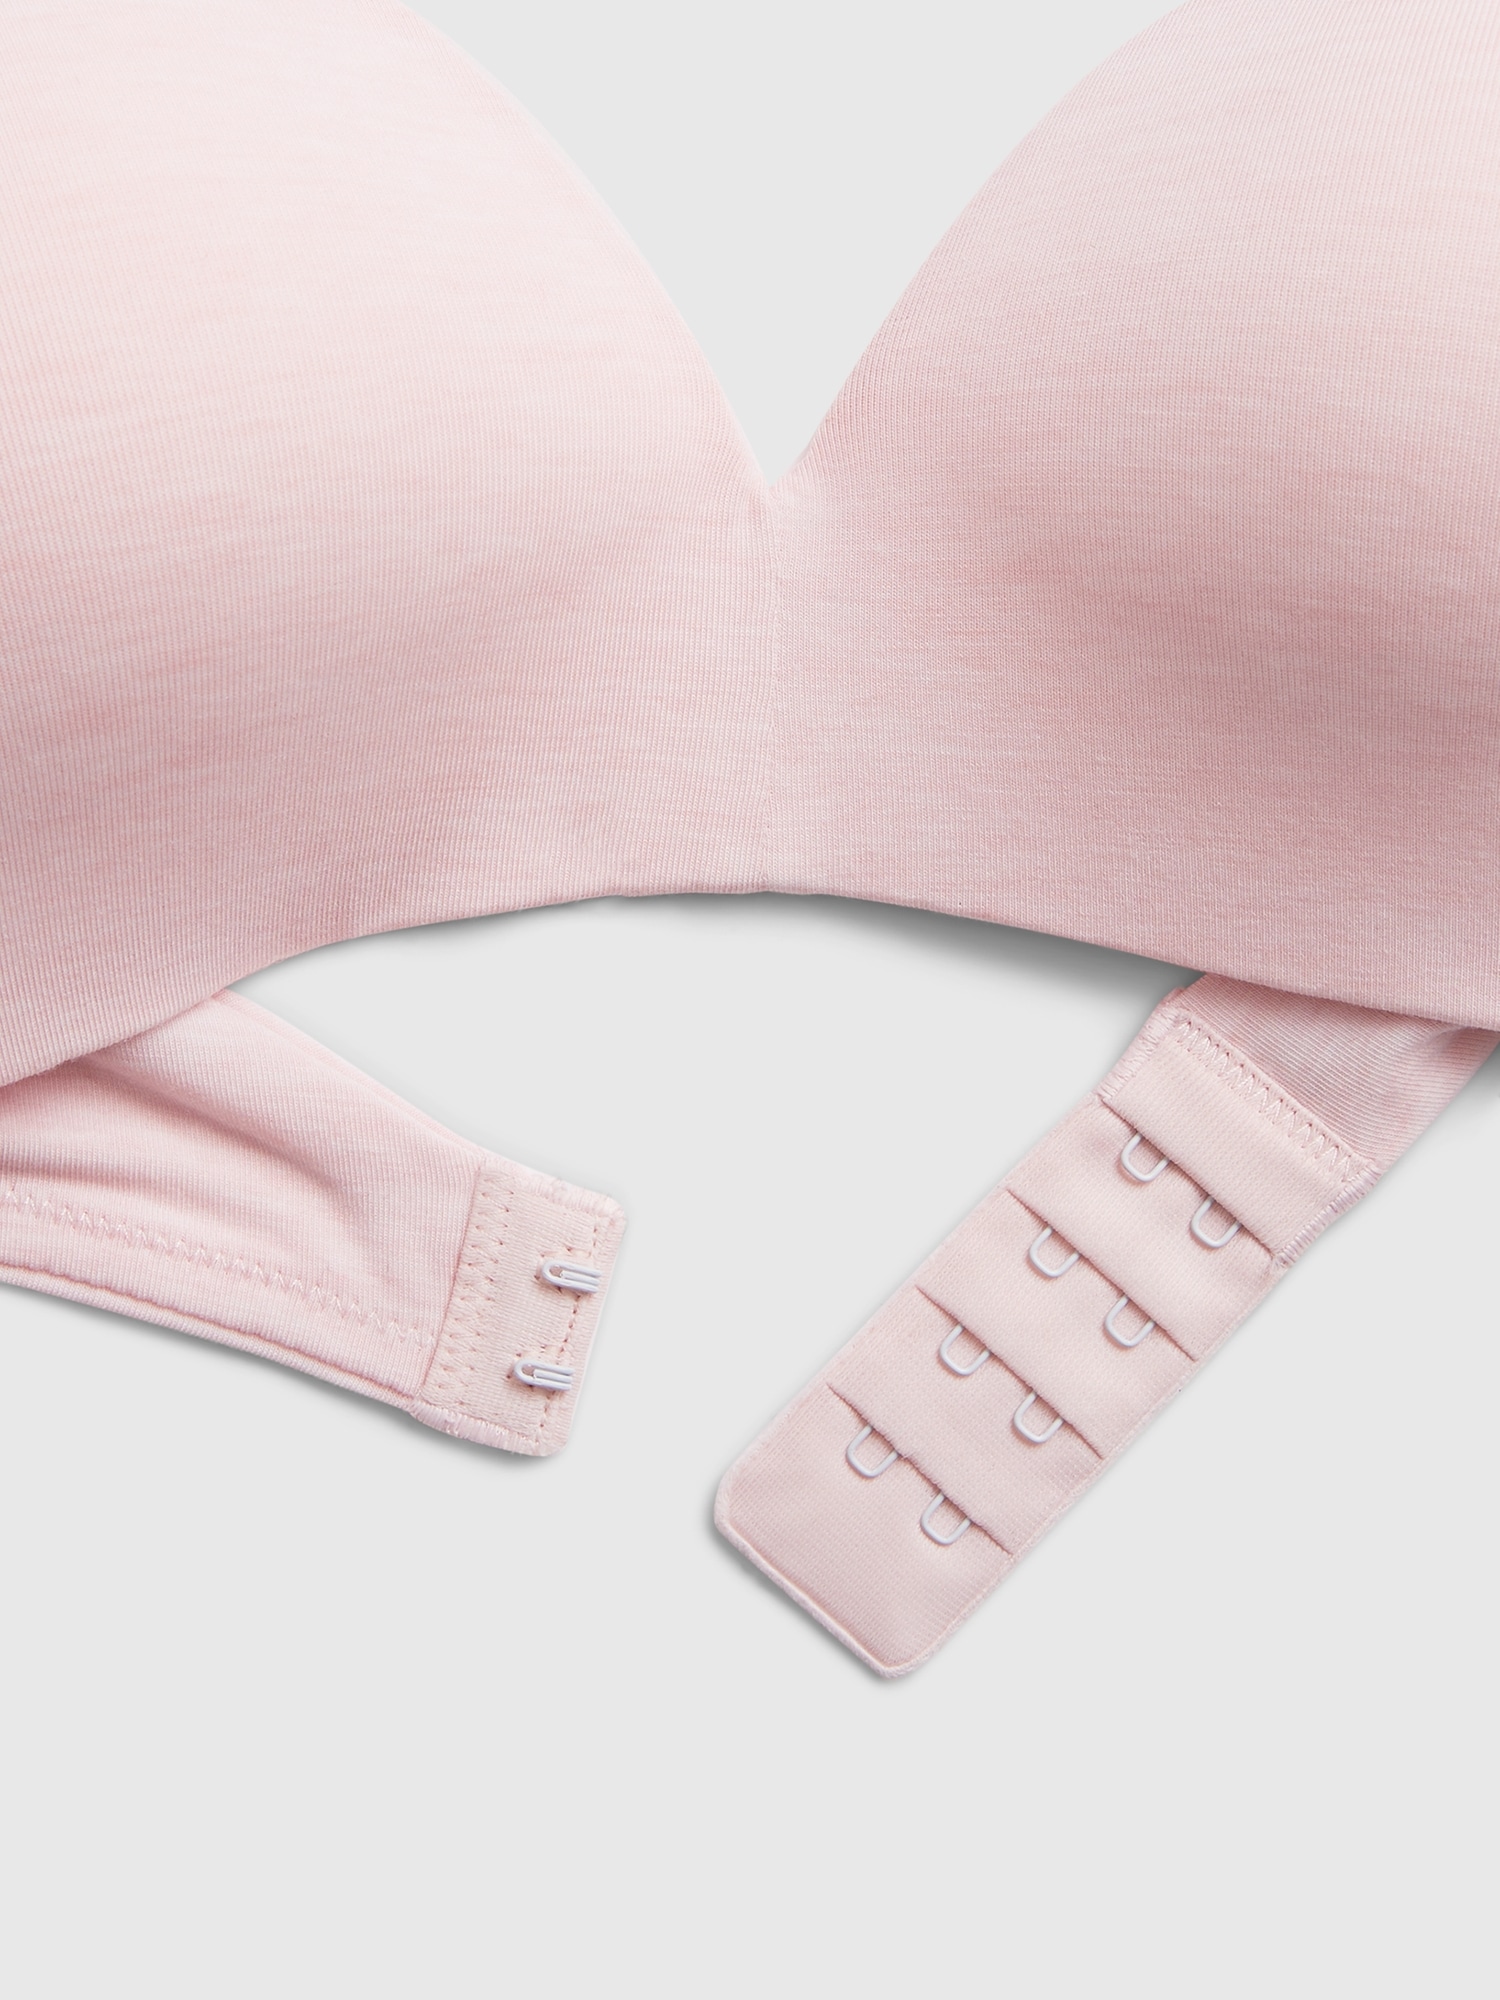 GAP, Intimates & Sleepwear, Nwt Love By Gap Breathe Wireless Pink Bra  Size 36a